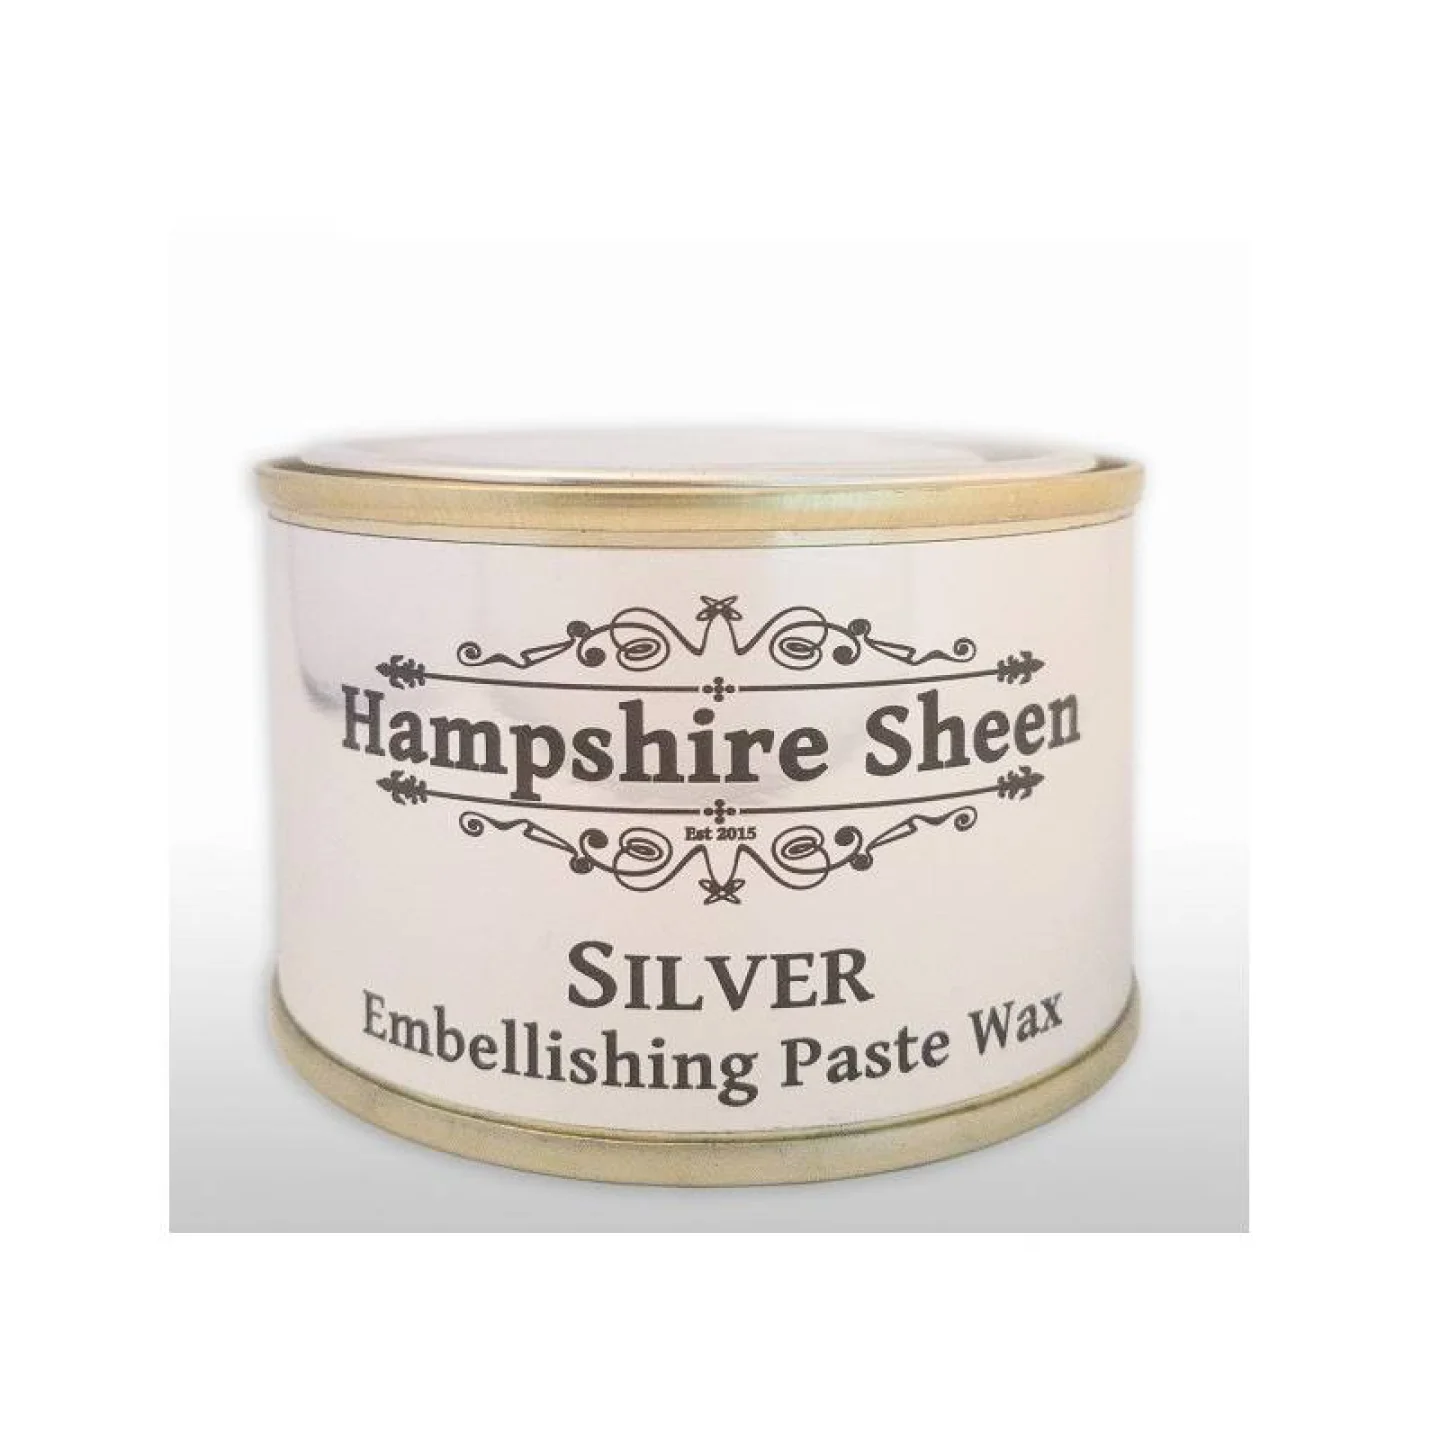 Hampshire-Sheen-silver-wax.